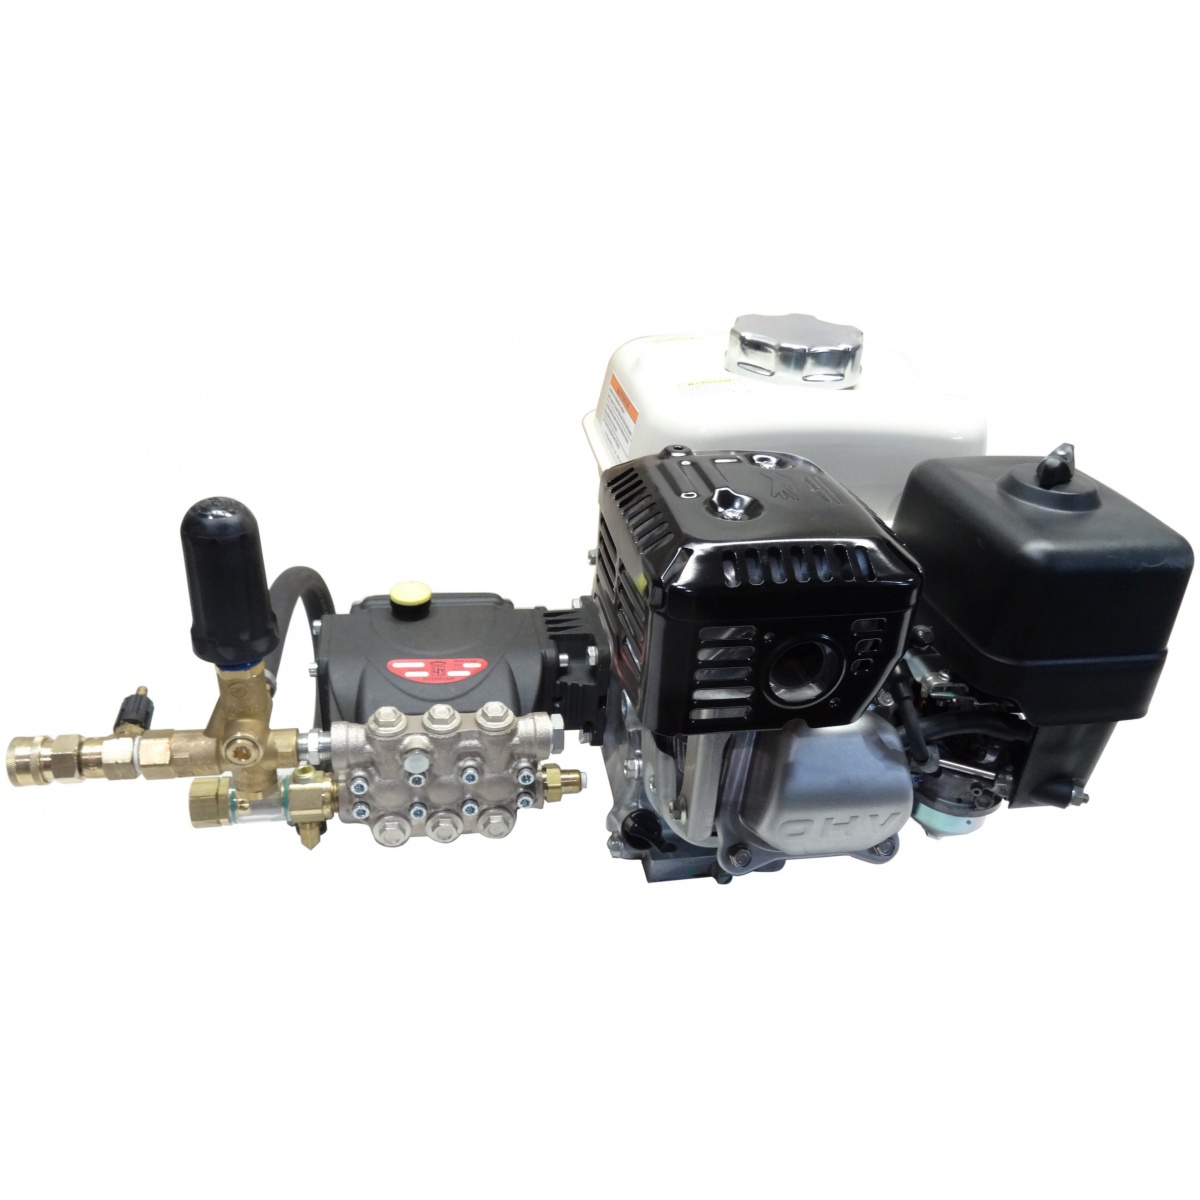 Dynablast – EPU435GRH High Flow Engine Pump Assembly